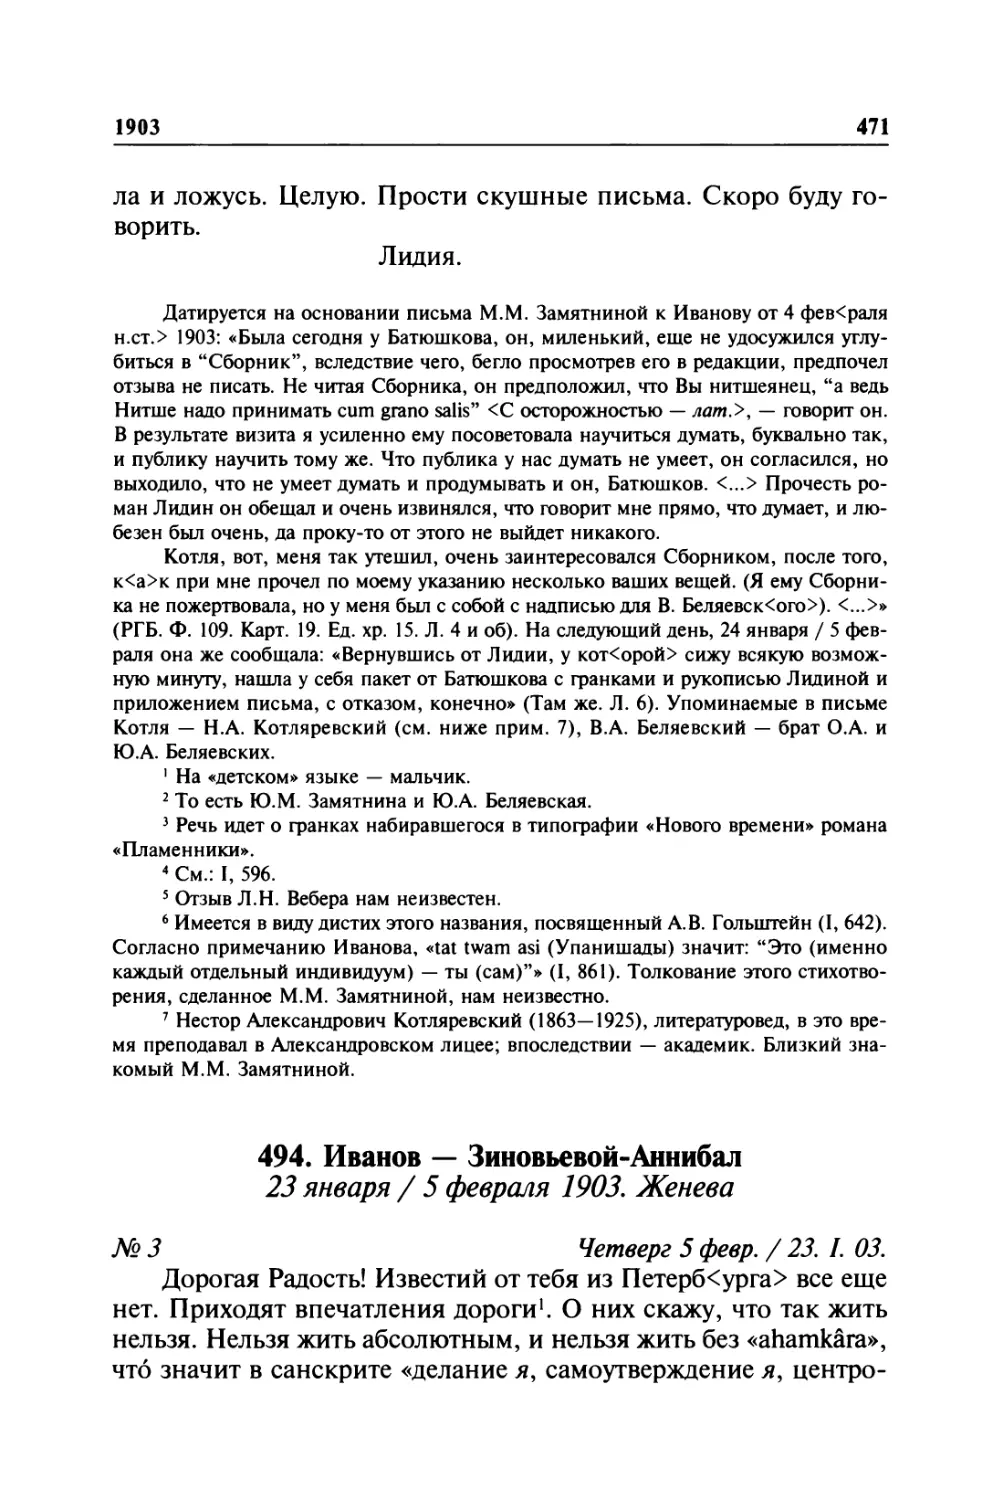 494. Иванов — Зиновьевой-Аннибал. 23 января / 5 февраля 1903. Женева